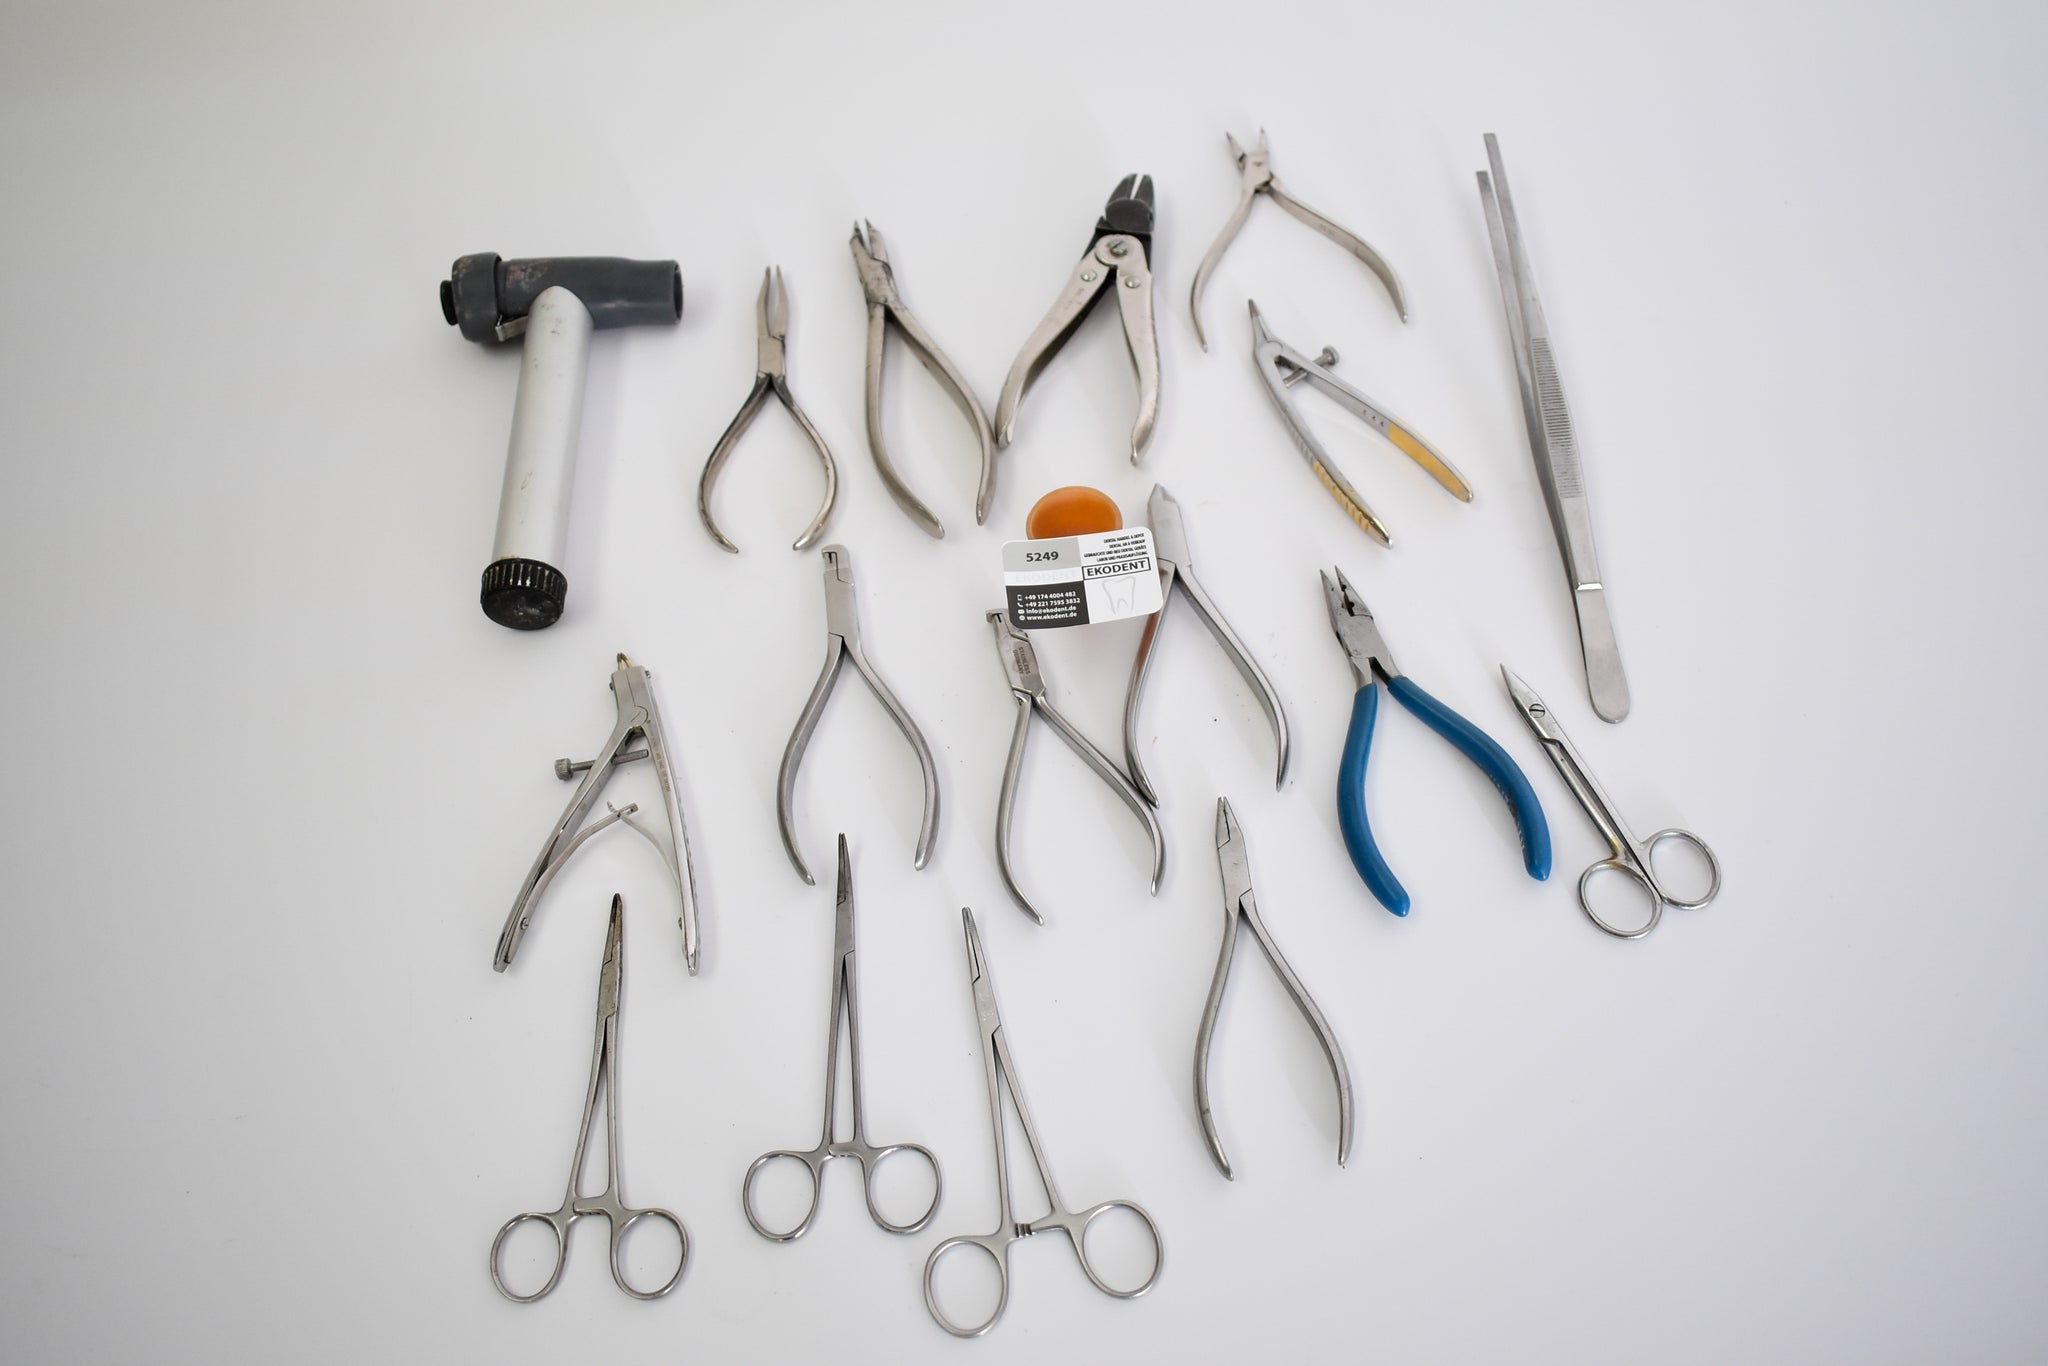 Dental, Zahnarzt Instrumente Werkzeug – EKODENT